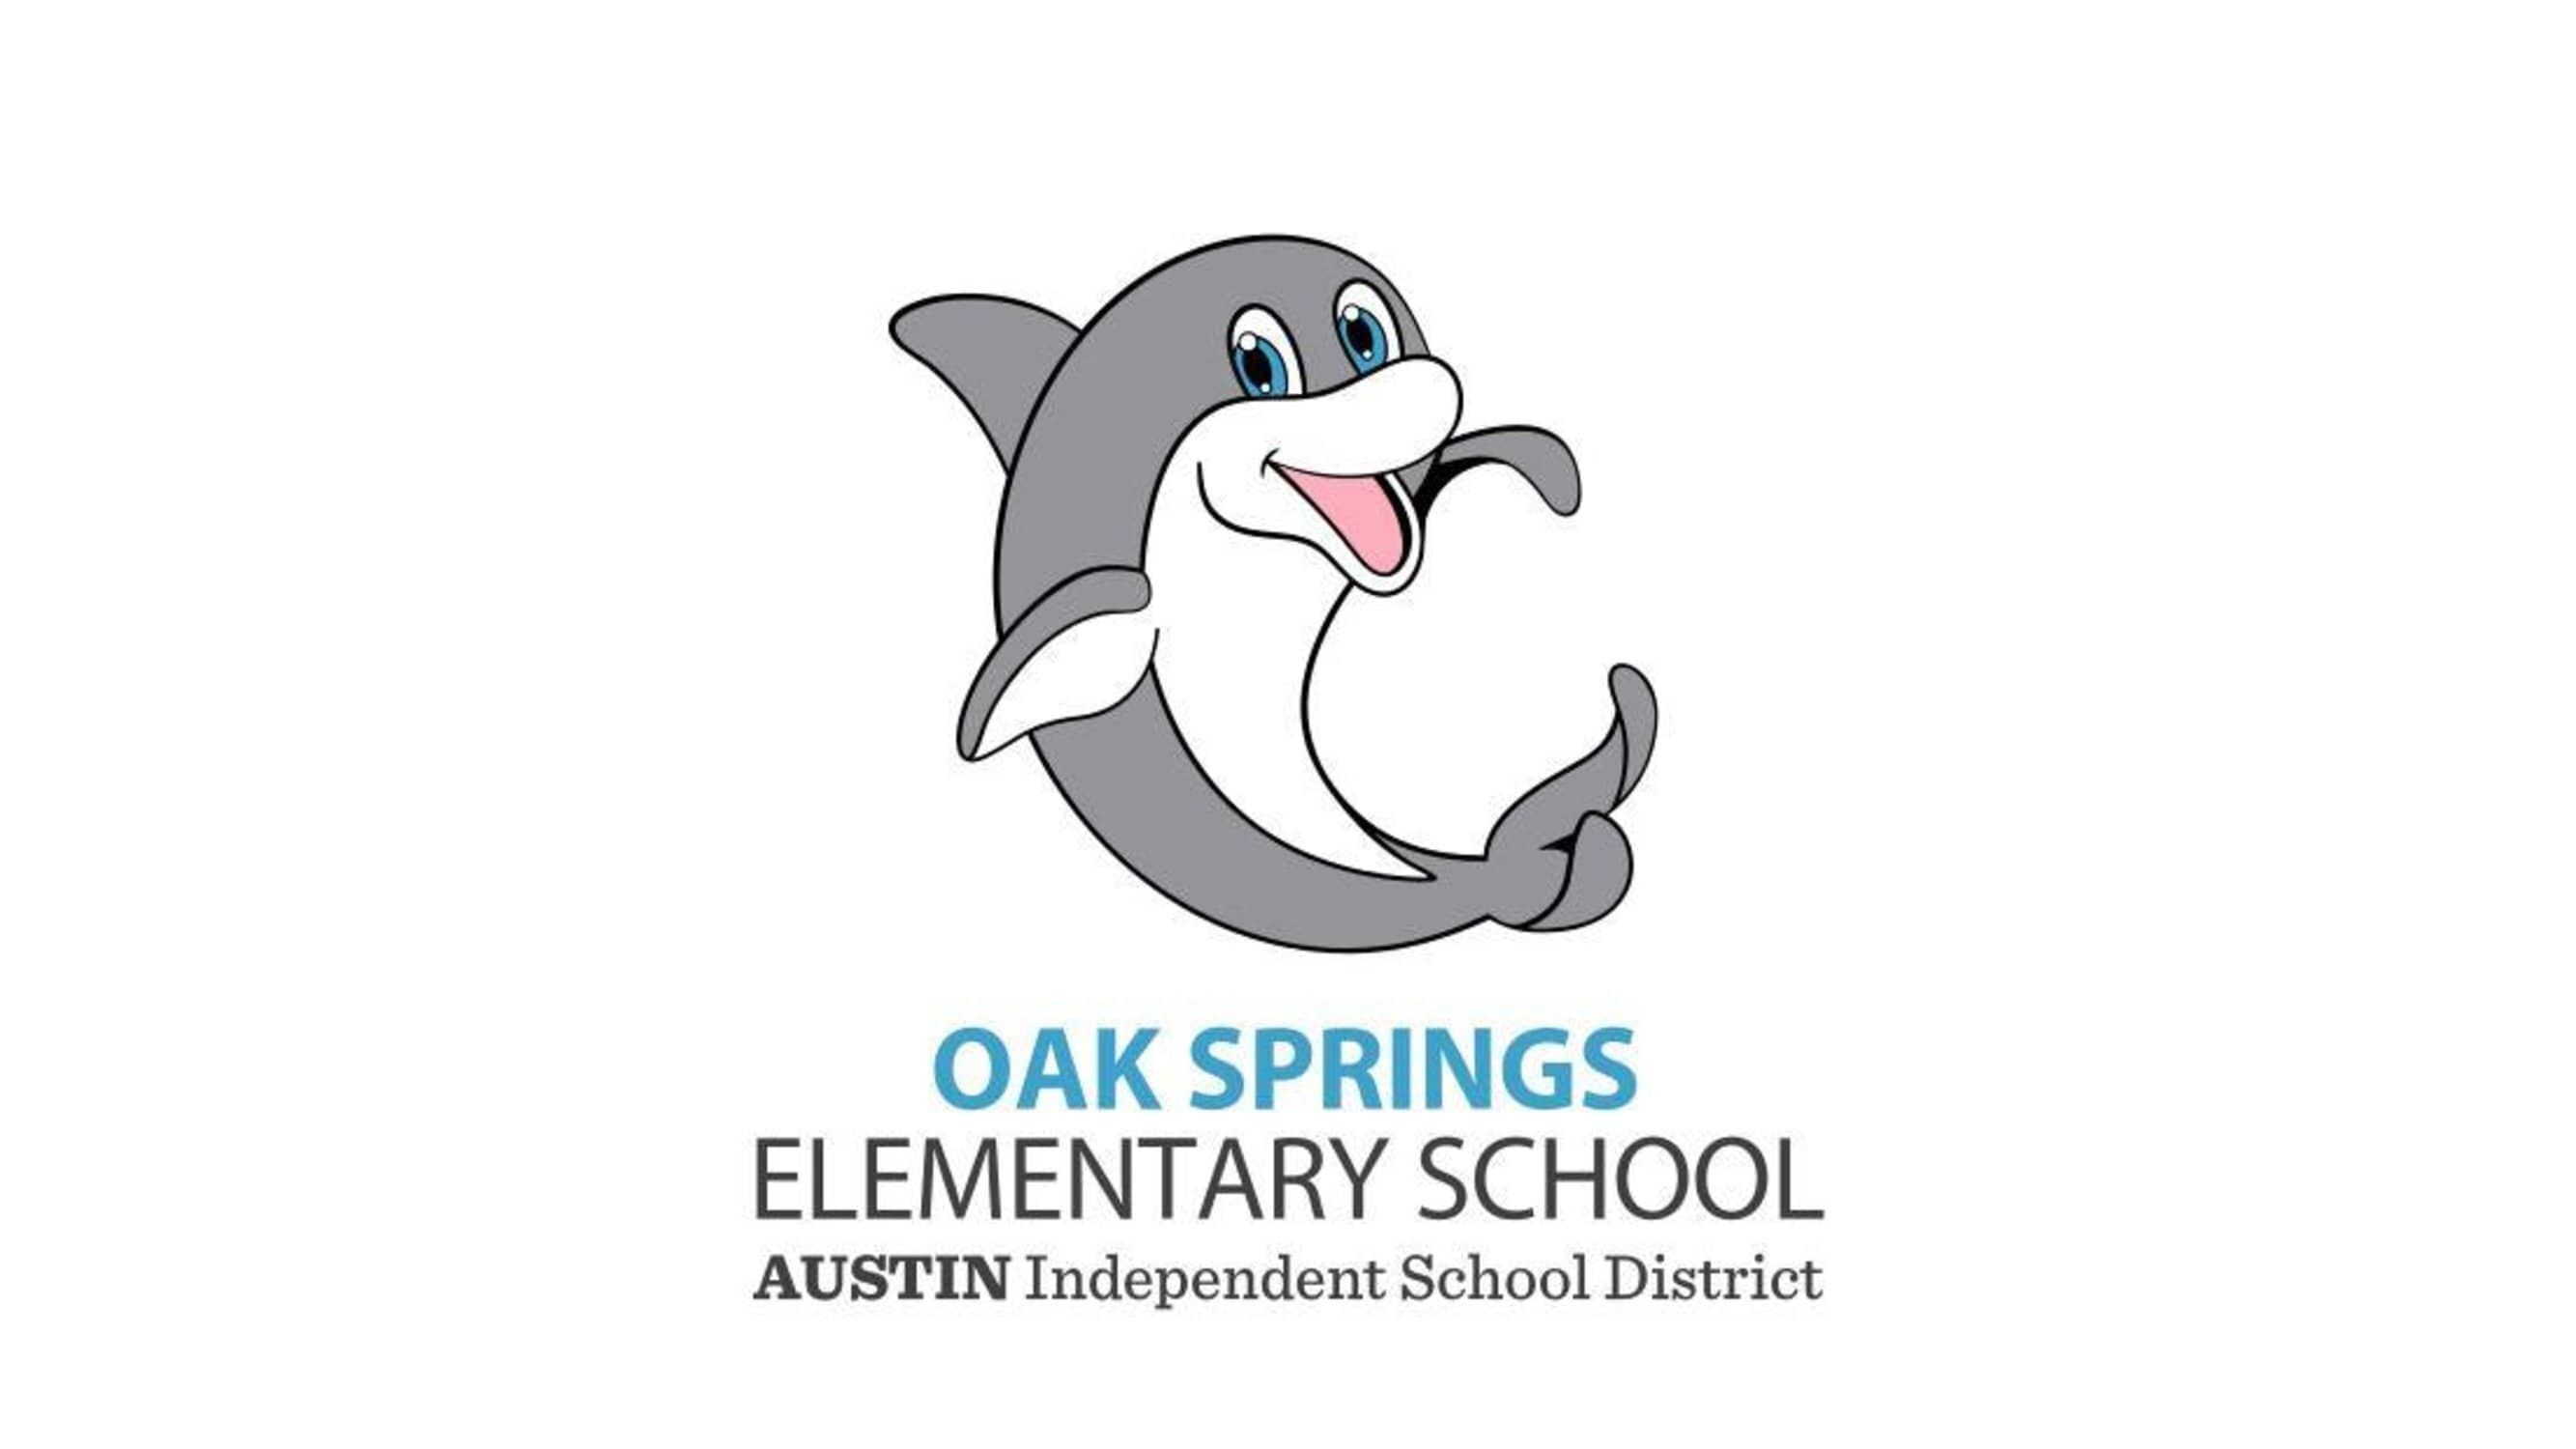 Oak Springs Elementary School